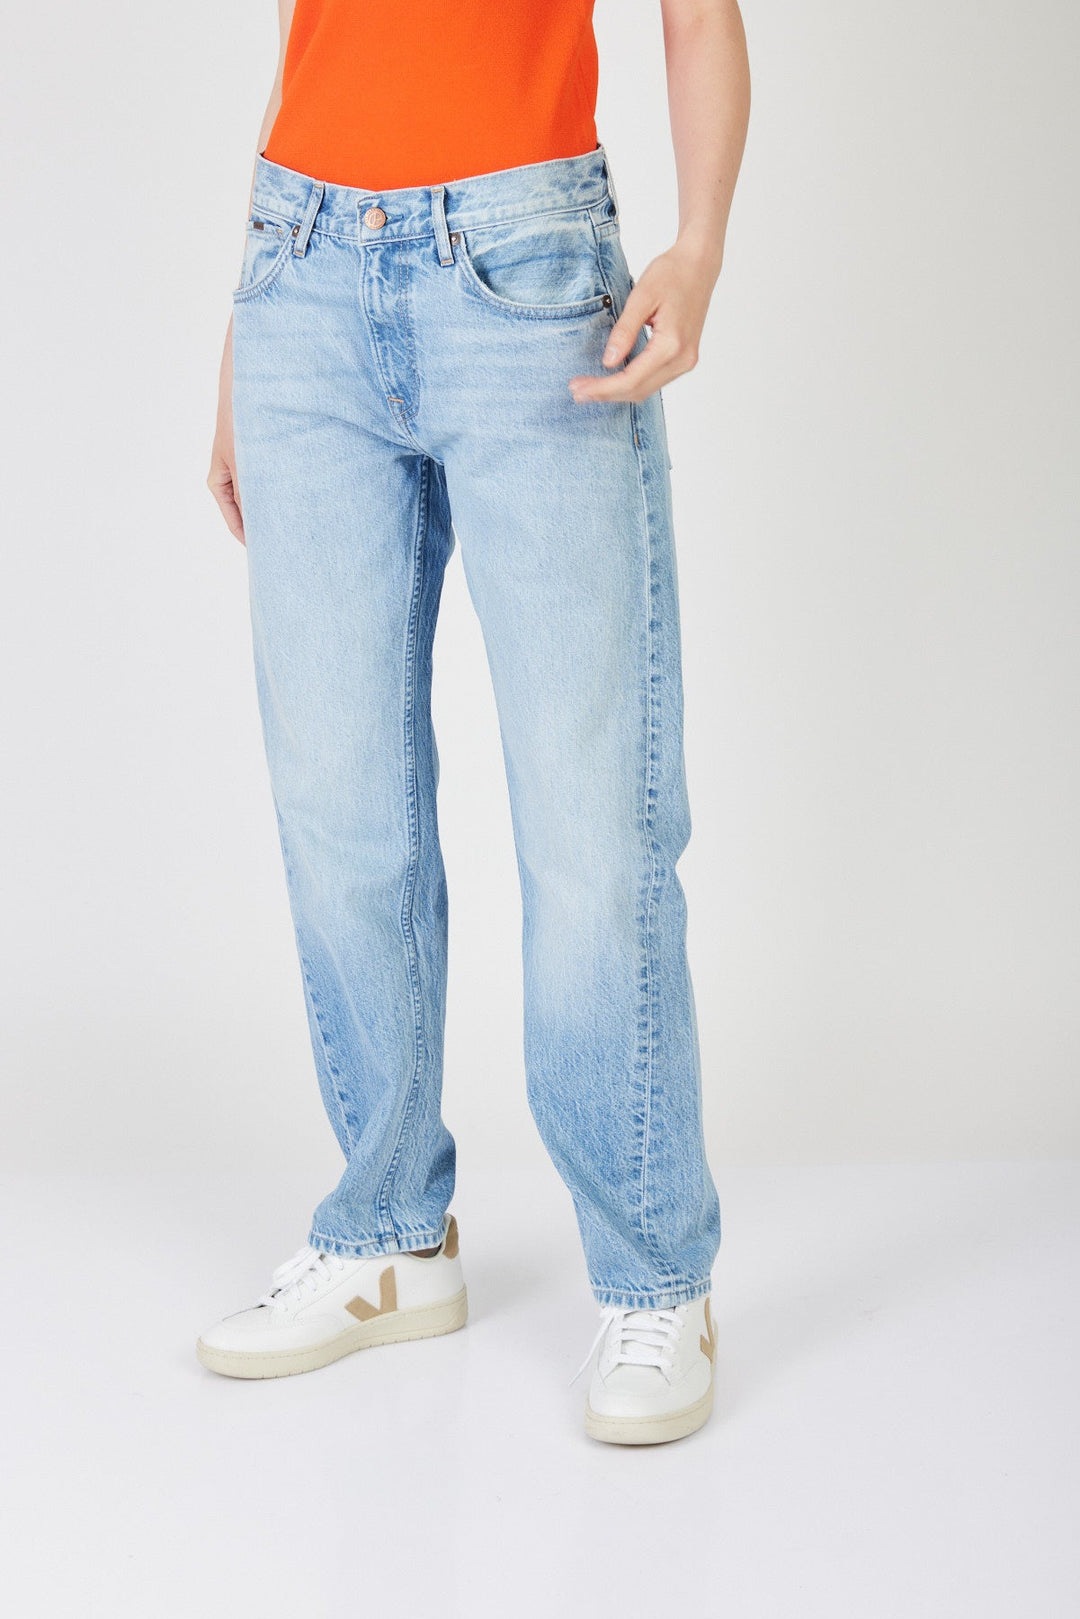 ג'ינס בויפרנד Darcy Lt בצבע כחול - Pepe Jeans